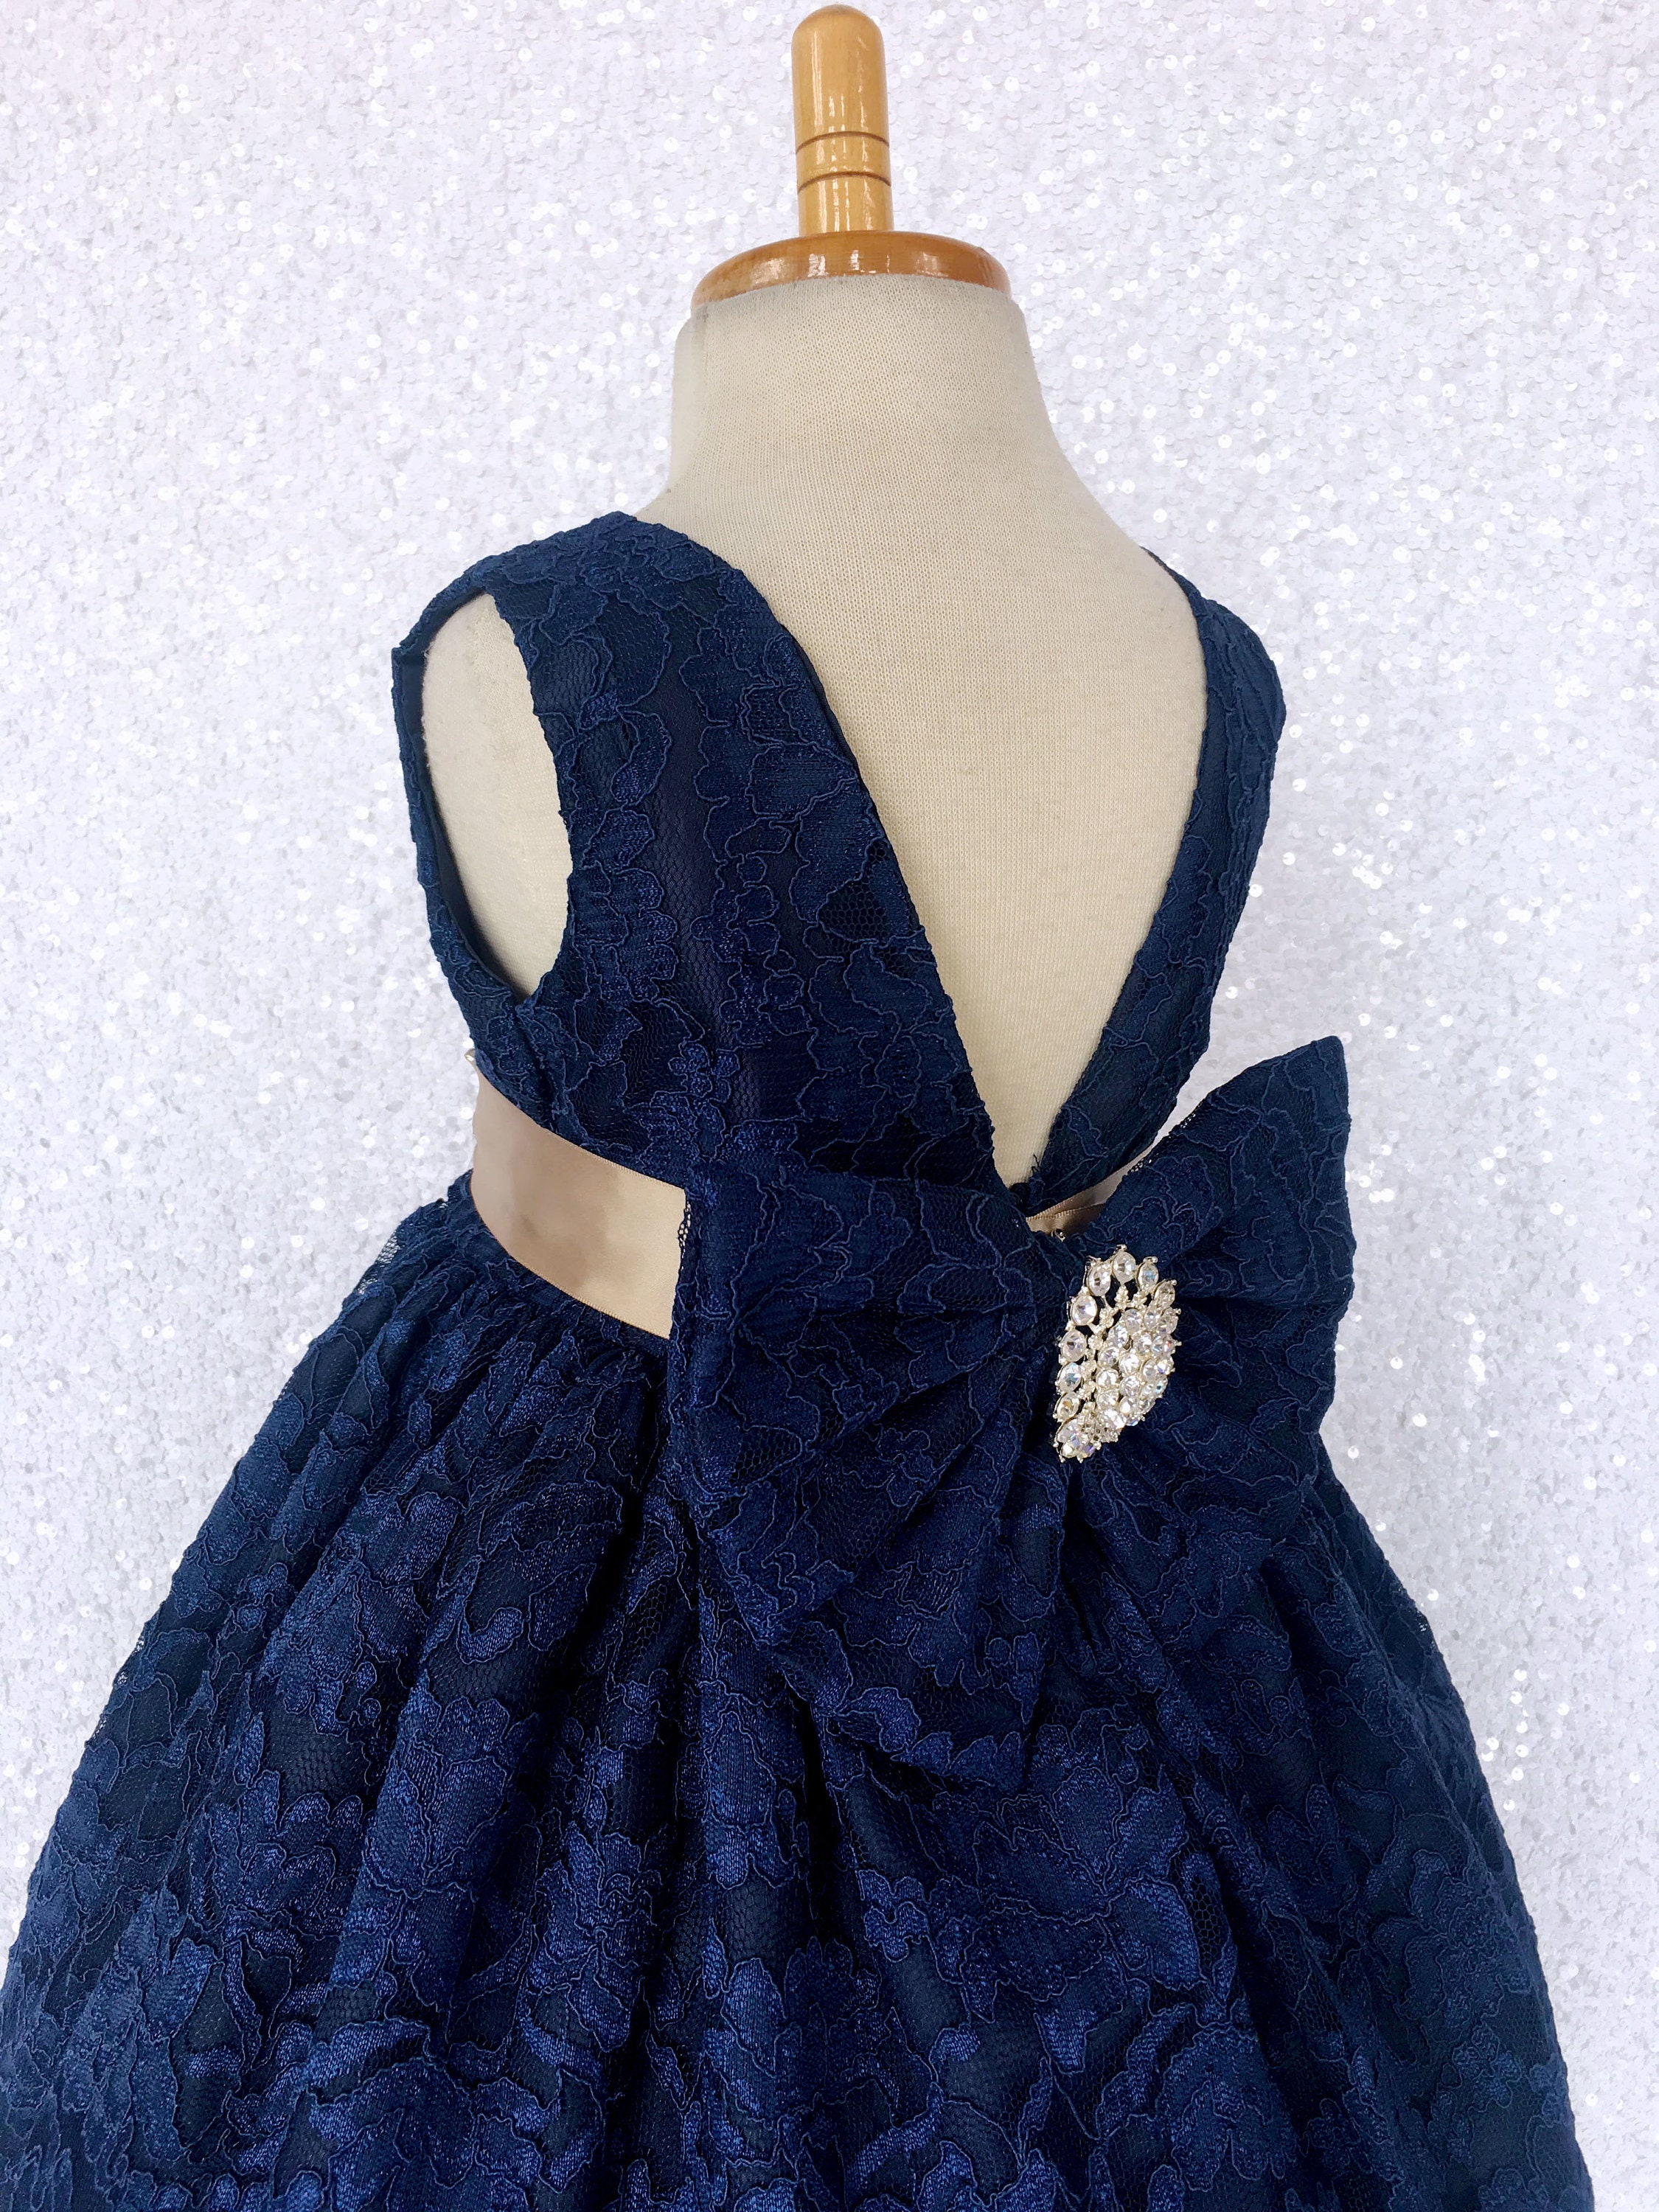 NAVY BLUE Flower Girl Dress, Baby Girl Dress, Toddler Tulle Dress